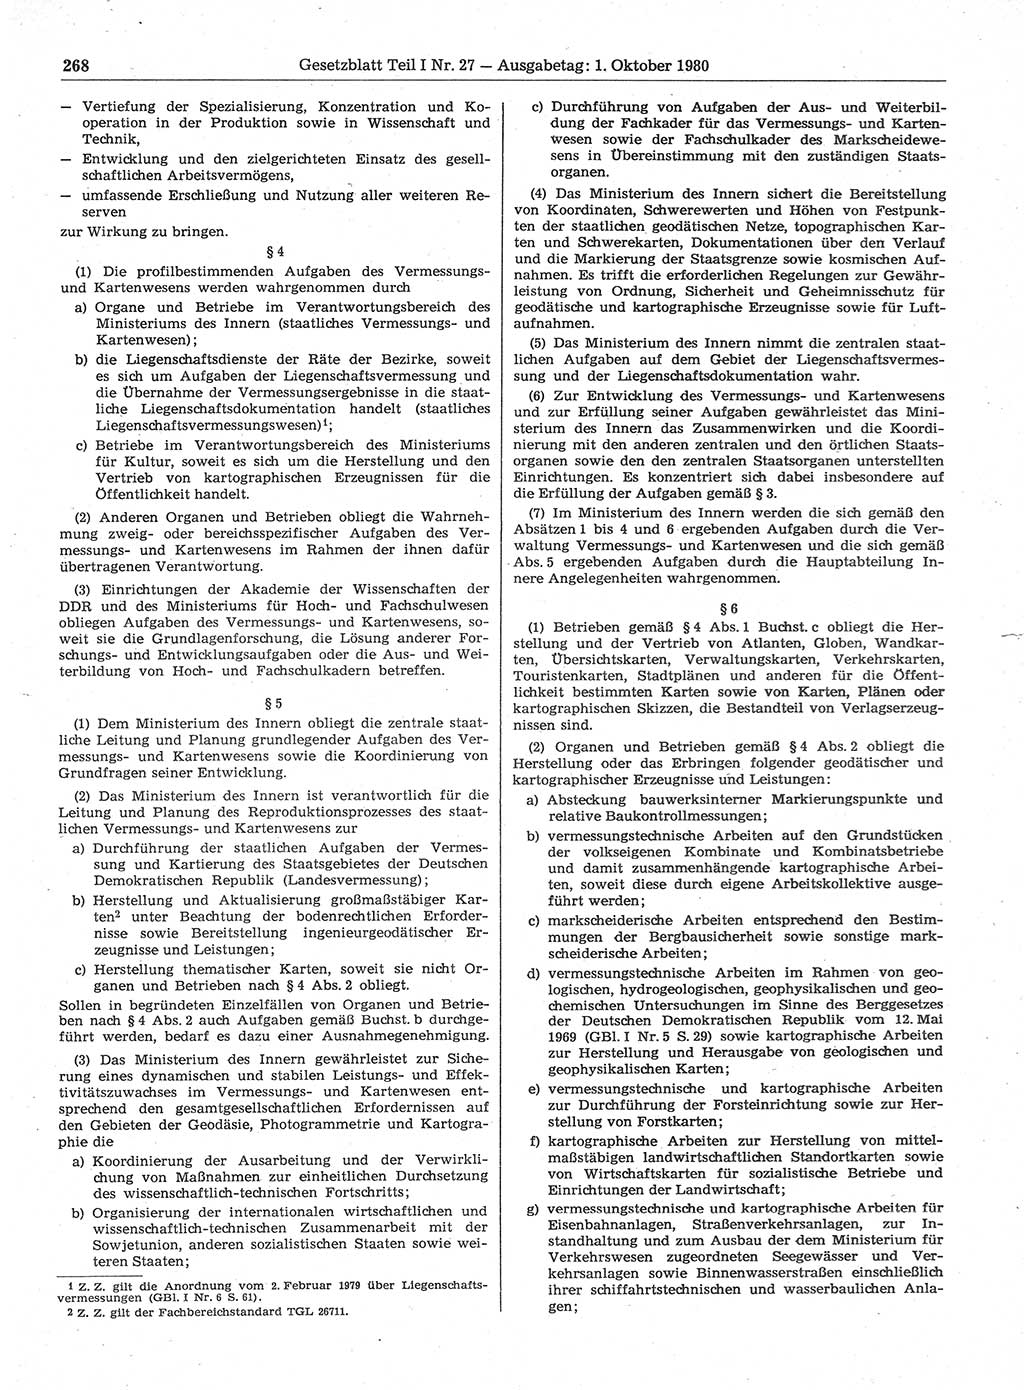 Gesetzblatt (GBl.) der Deutschen Demokratischen Republik (DDR) Teil Ⅰ 1980, Seite 268 (GBl. DDR Ⅰ 1980, S. 268)